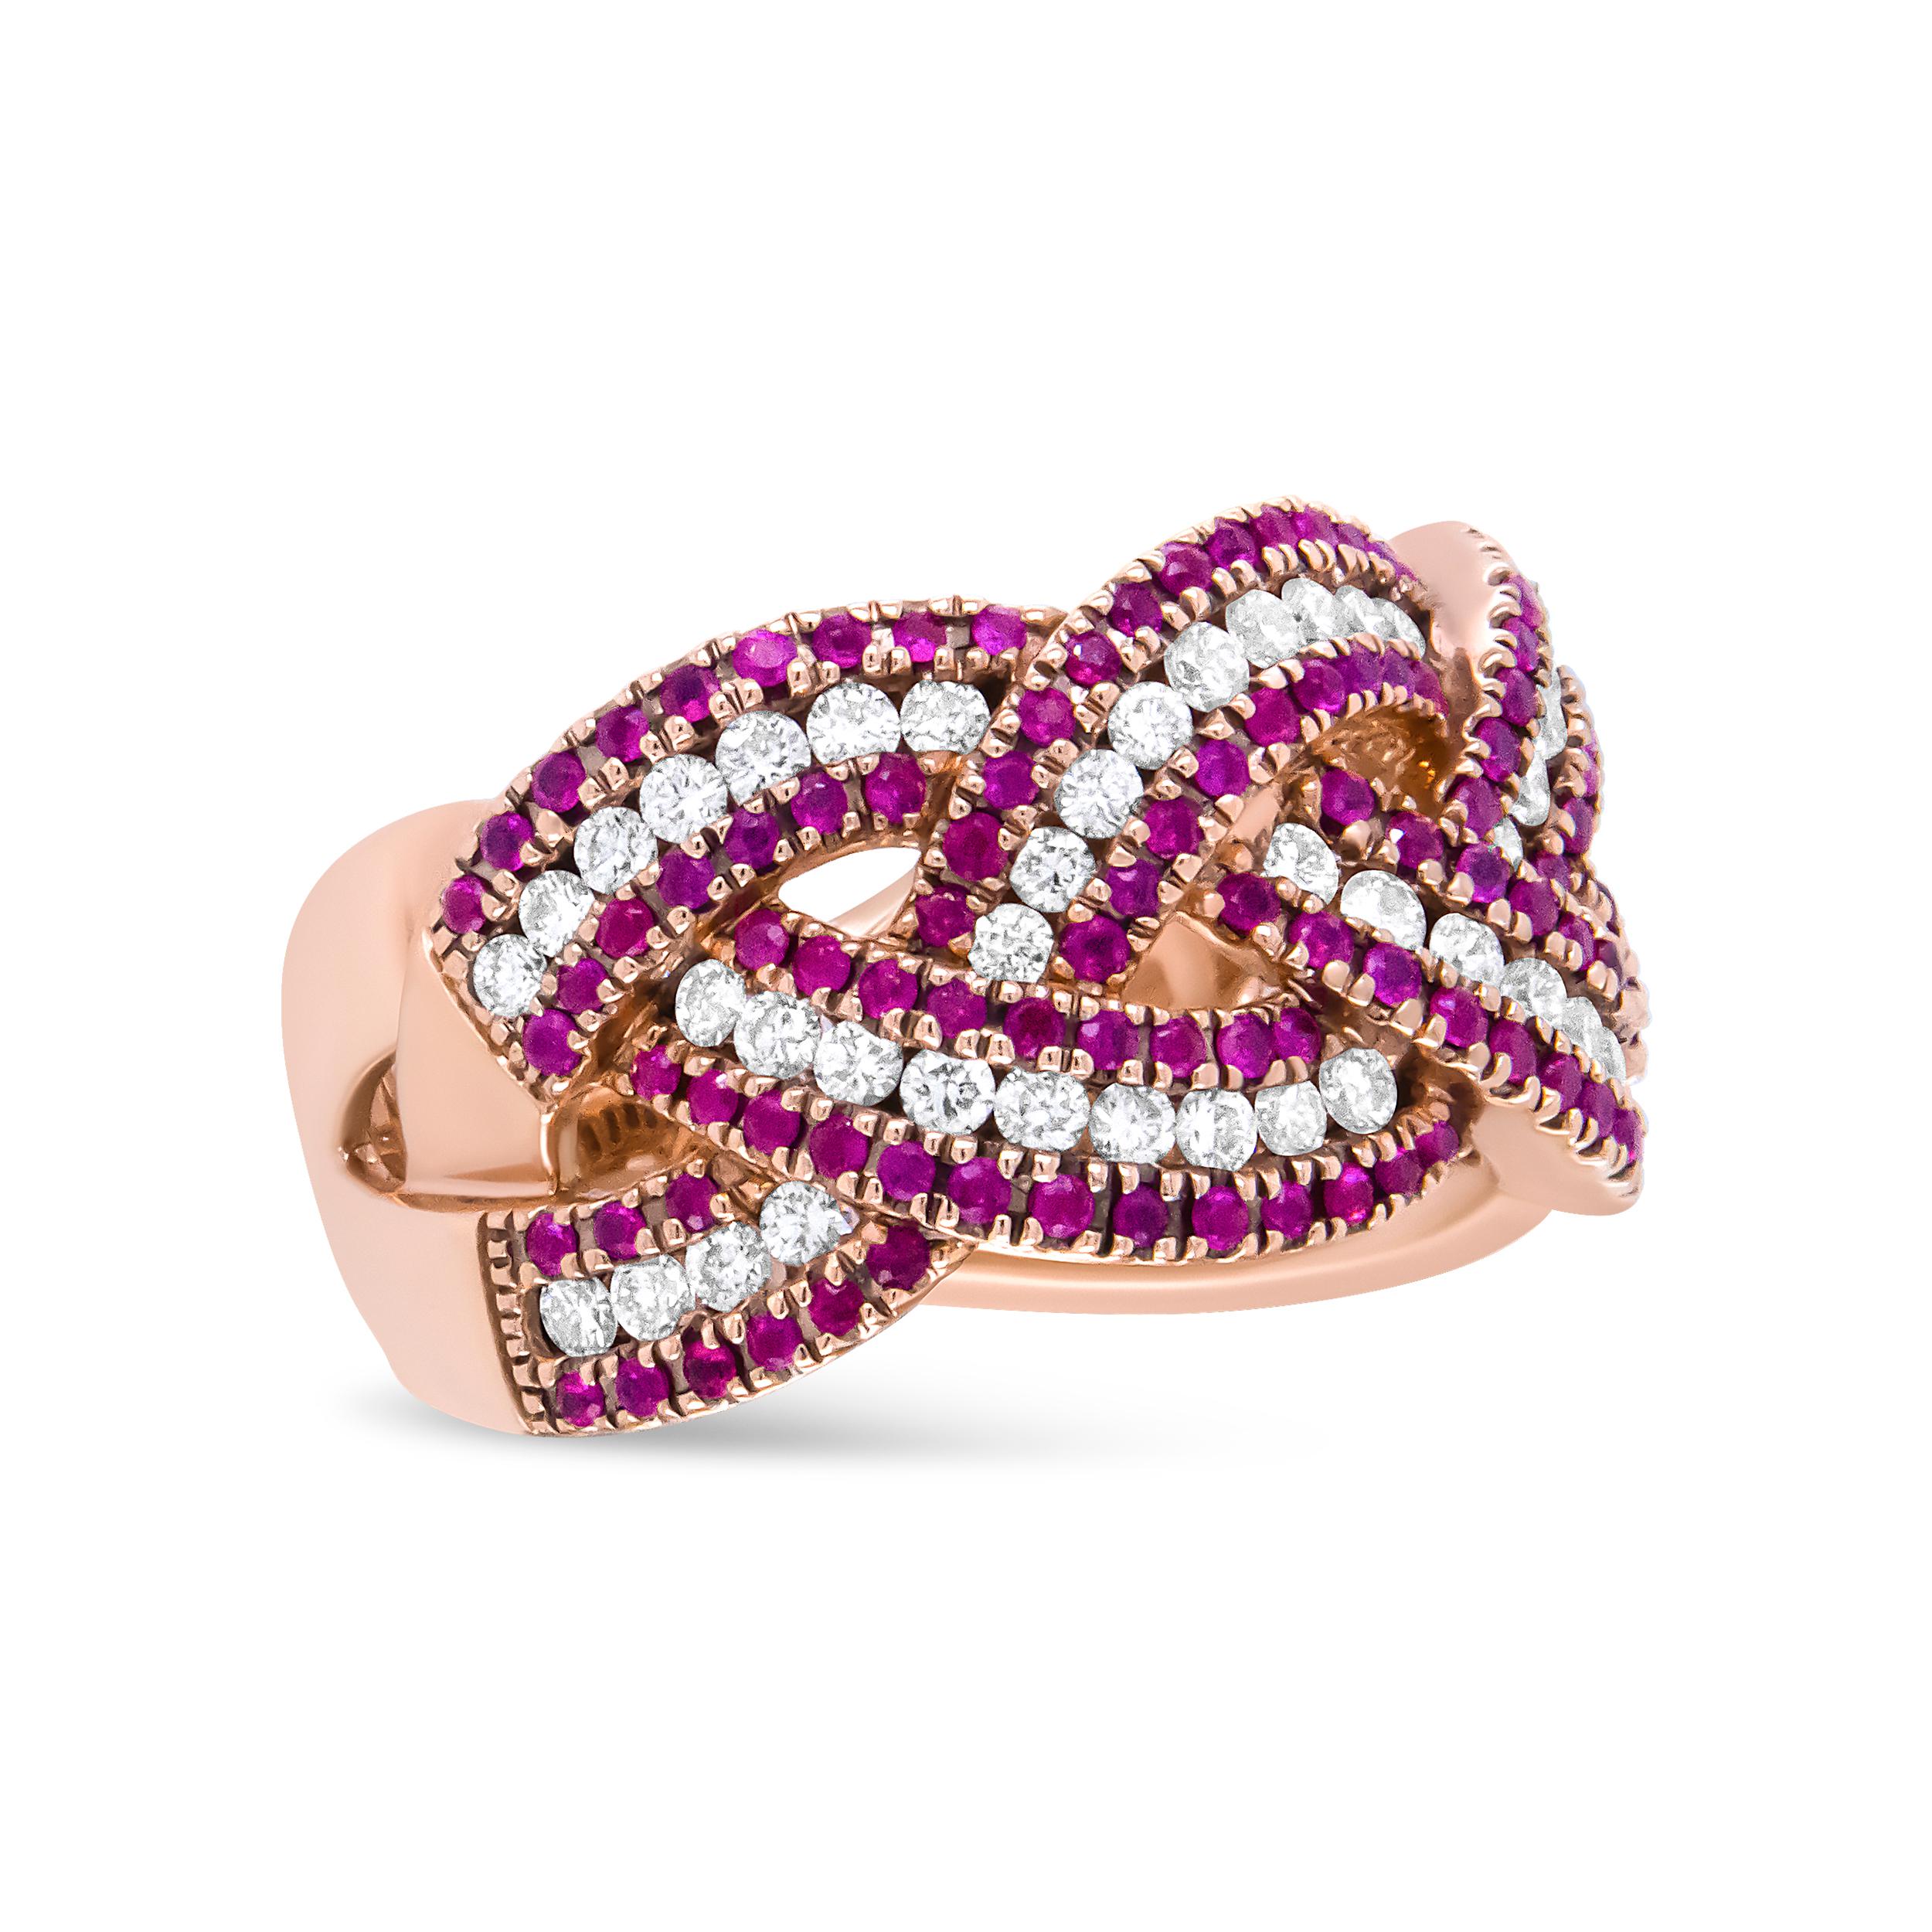 Des rubis et des diamants dansent délicatement sur ce bracelet en or rose 18 carats. Réalisée avec un design complexe, cette bague est sertie d'un poids total de 7/8 c.t. de carats. Des rangées de rubis rouges alternent avec des rangées de diamants